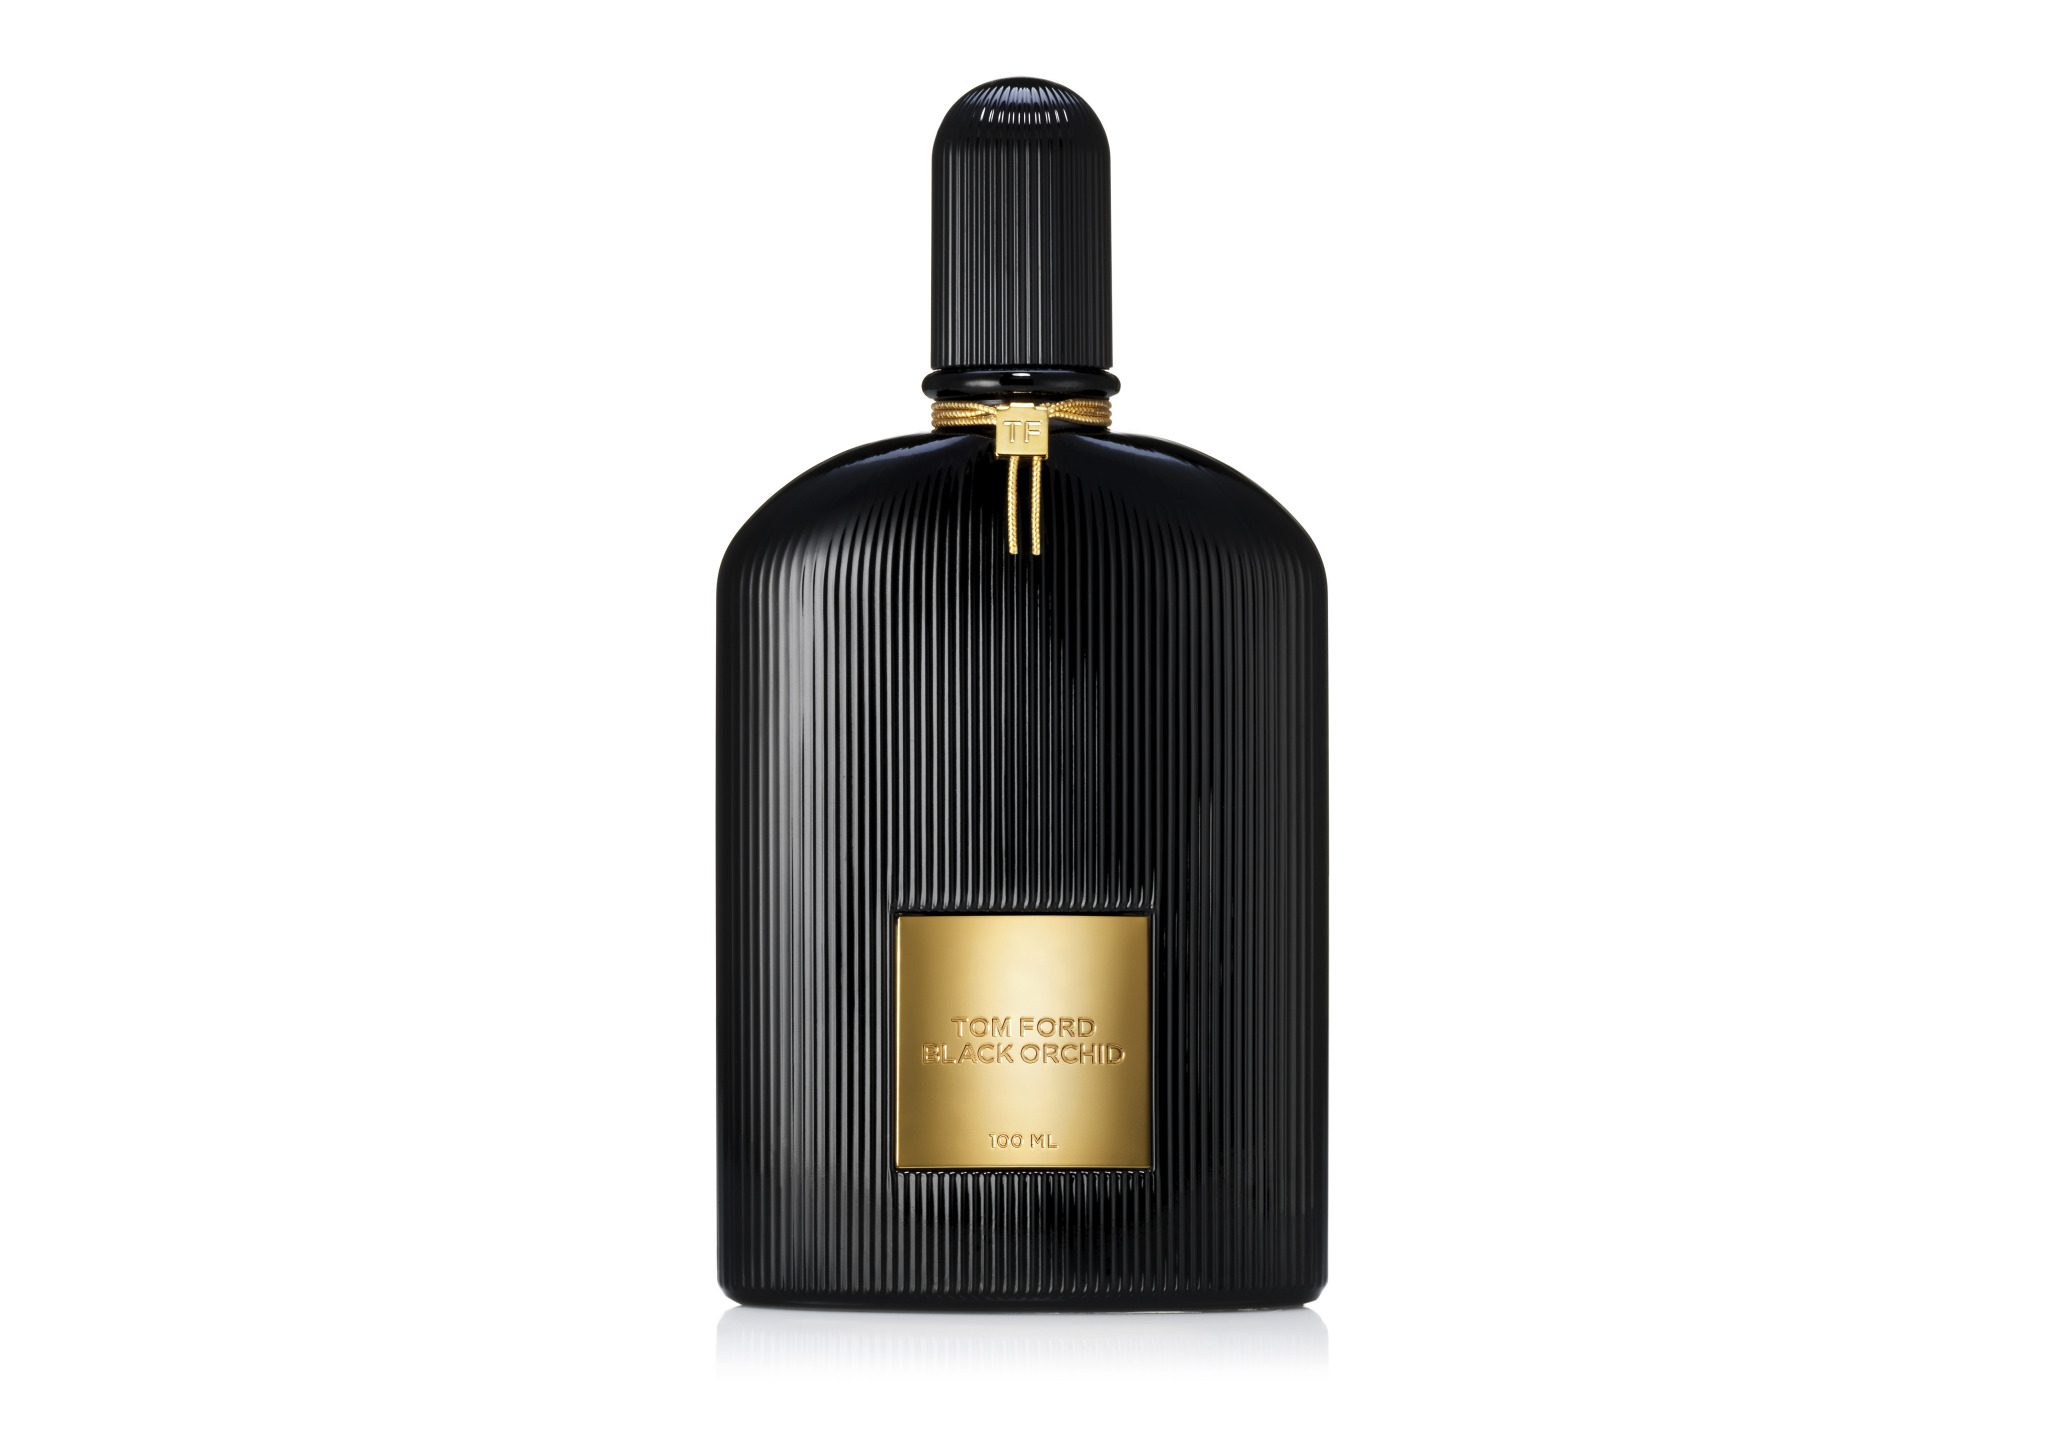 Black Orchid Eau de Parfum